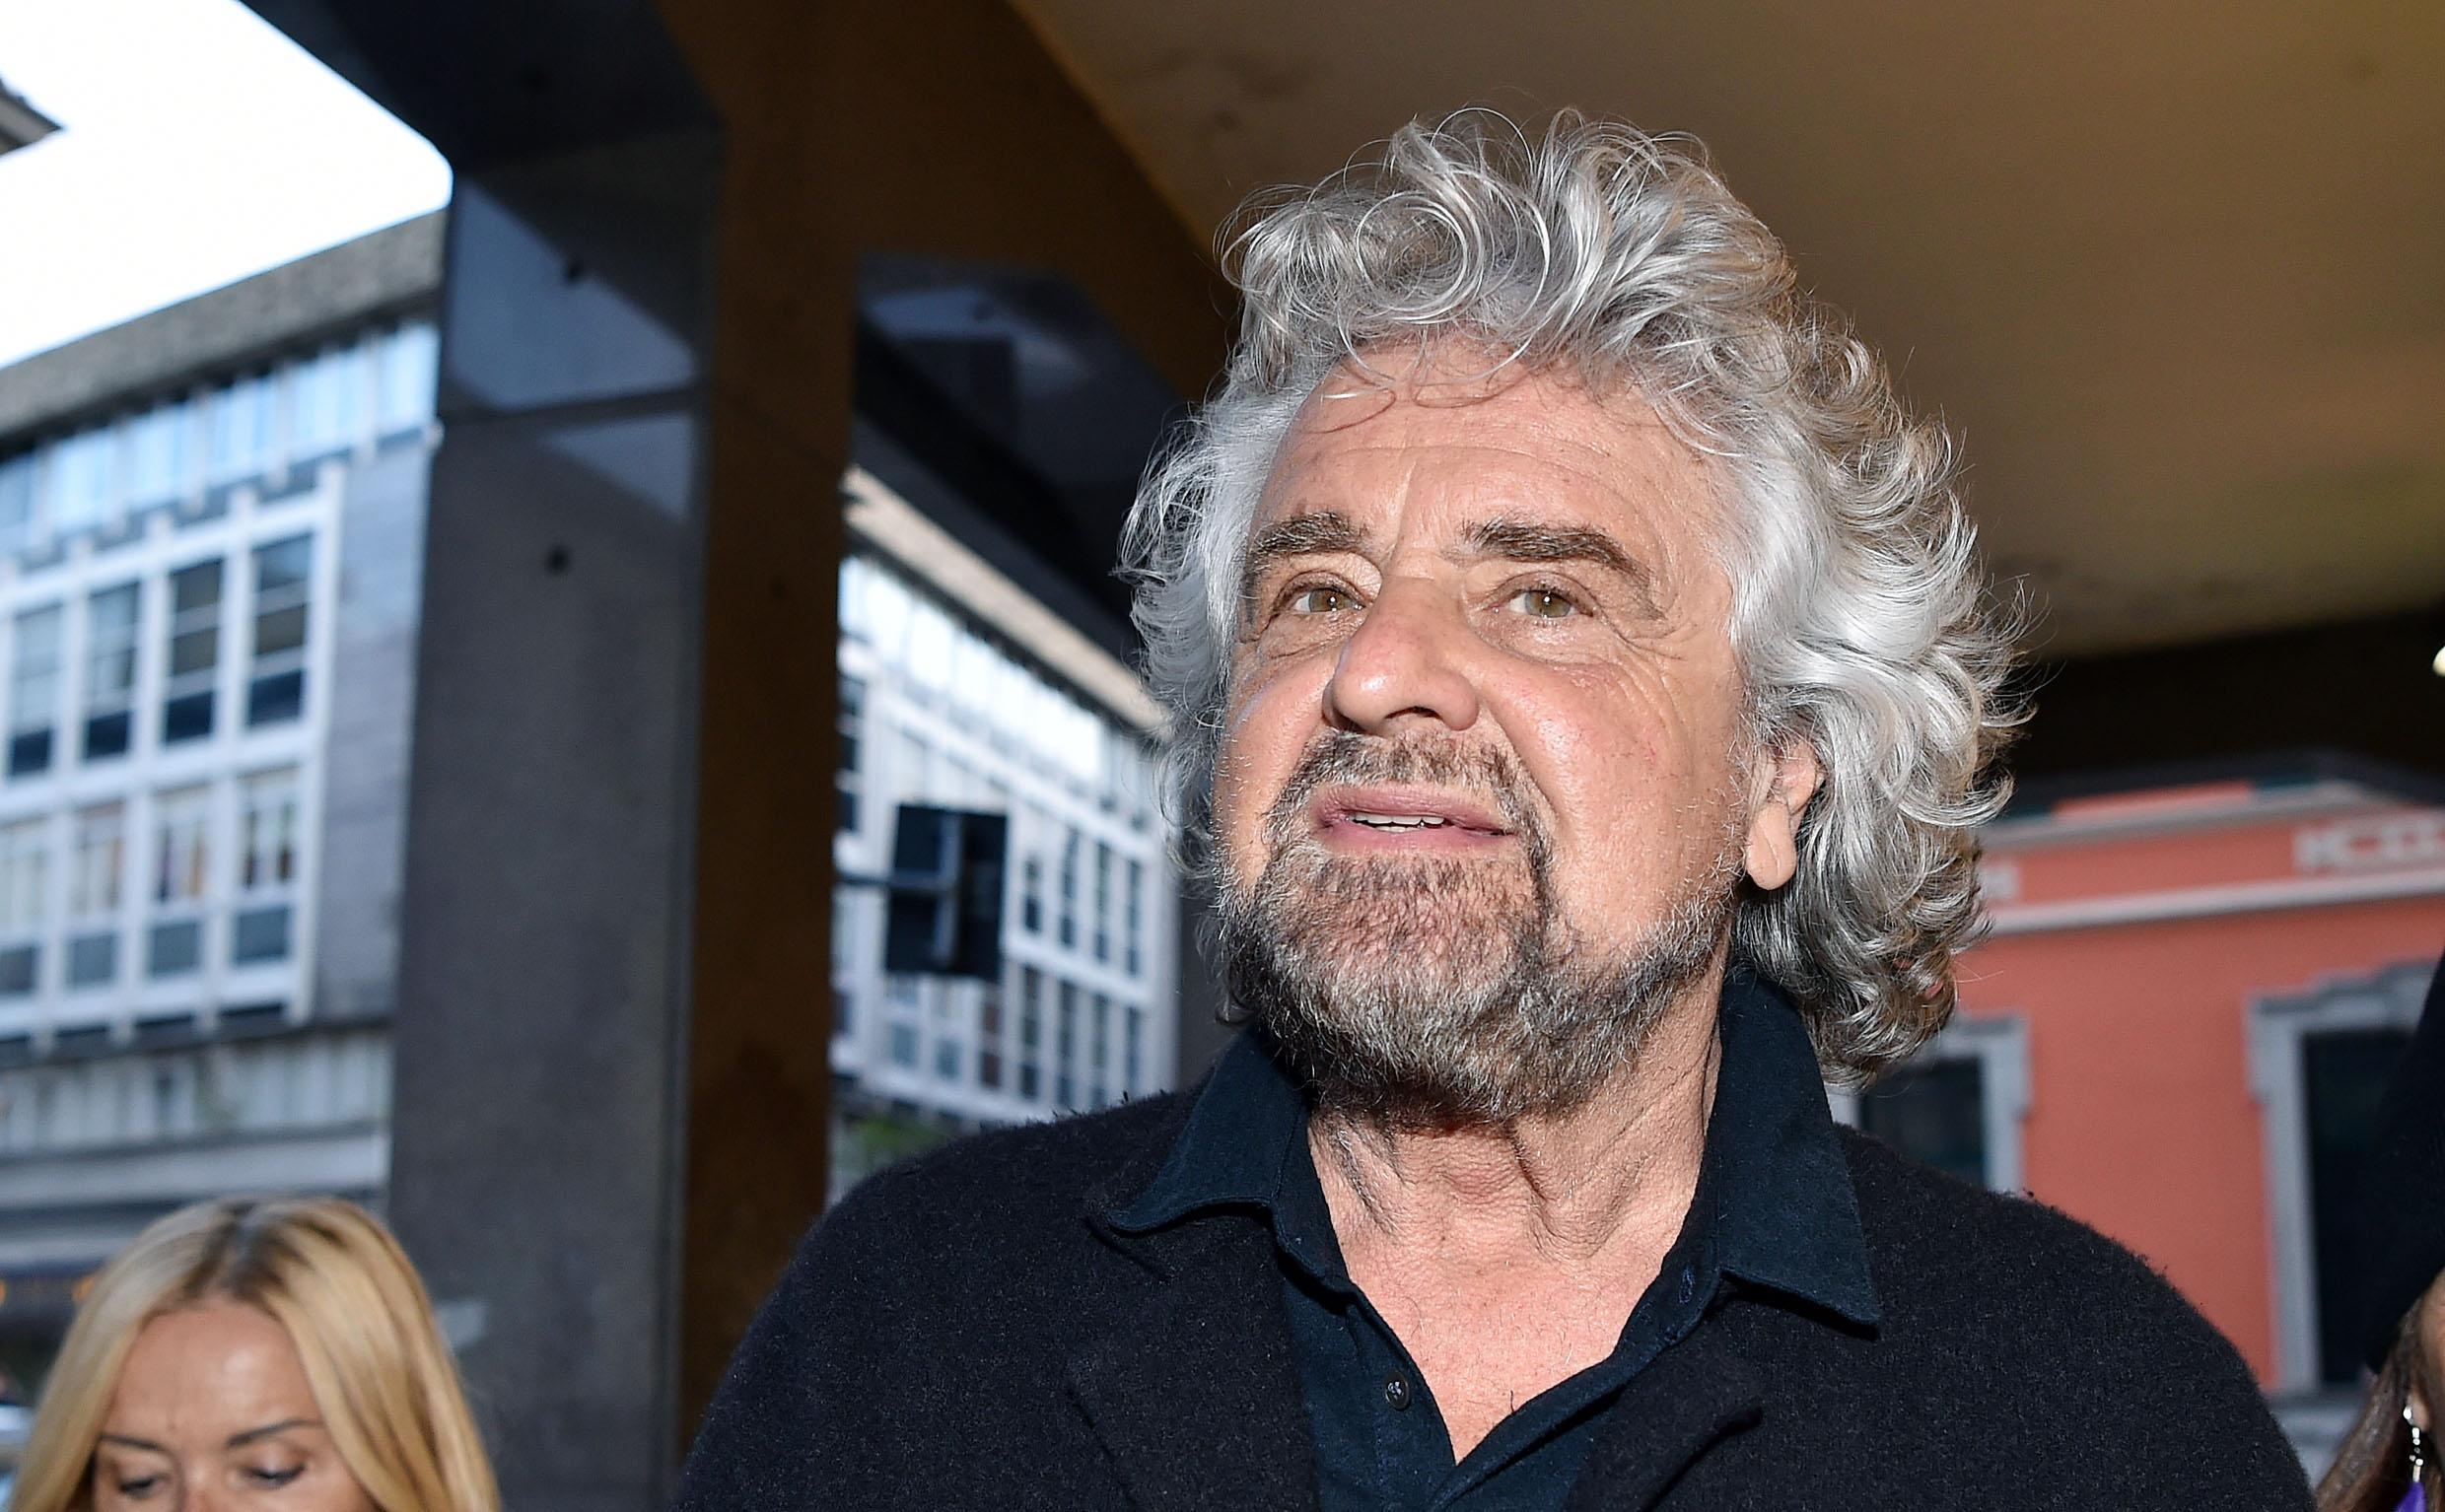 Capodanno 2010: il sarcasmo di Beppe Grillo